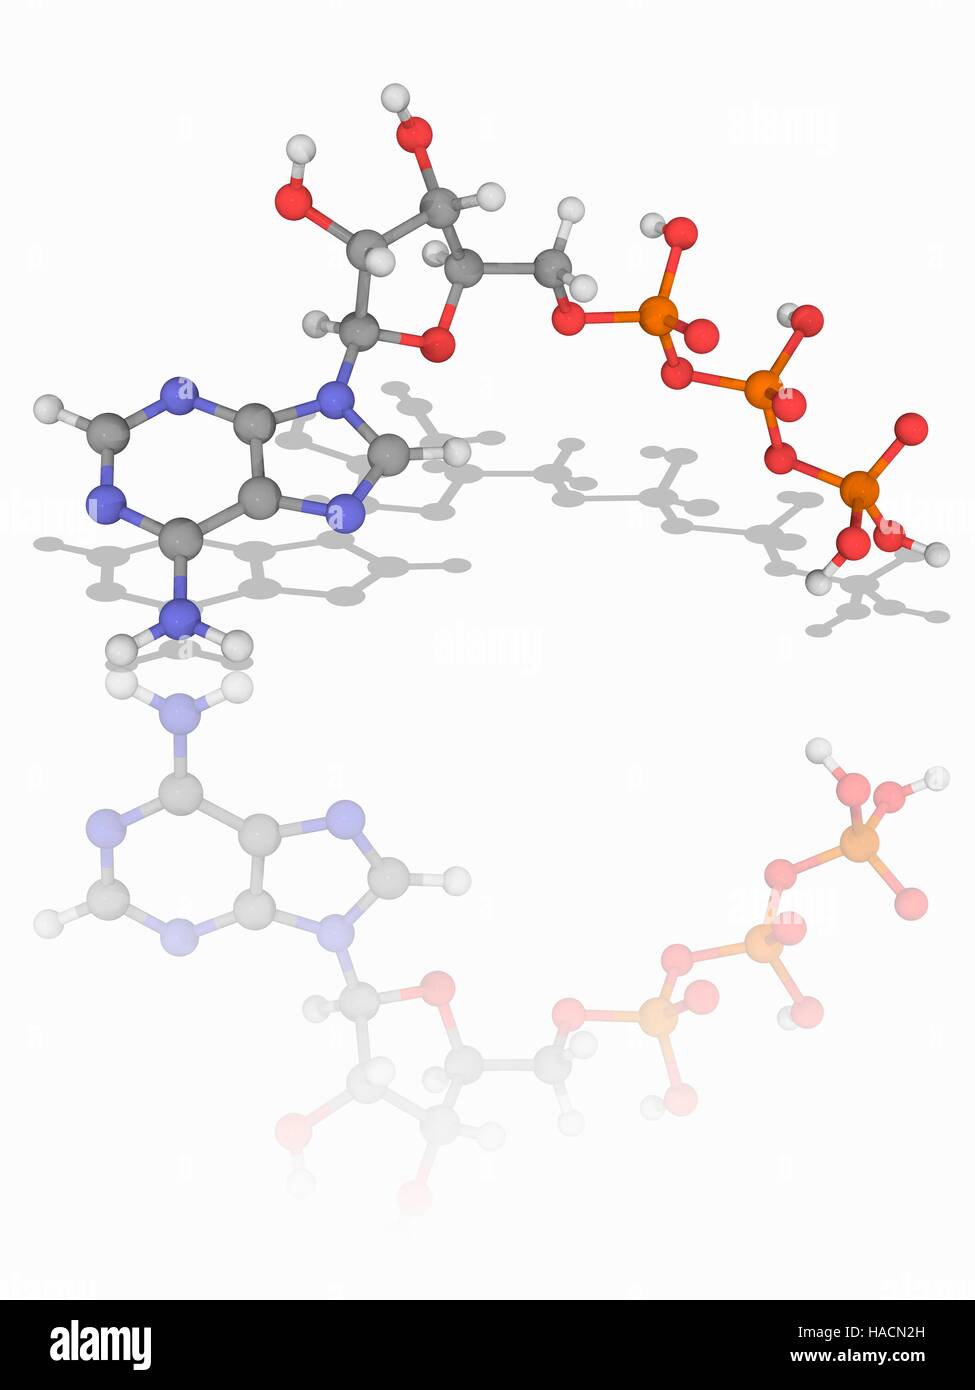 El trifosfato de adenosina. Modelo molecular de la coenzima trifosfato de  adenosina (ATP, C10.H16.N5.O13.P3). Esta molécula es un portador de energía  metabólica en las células. Los átomos son representados como esferas y